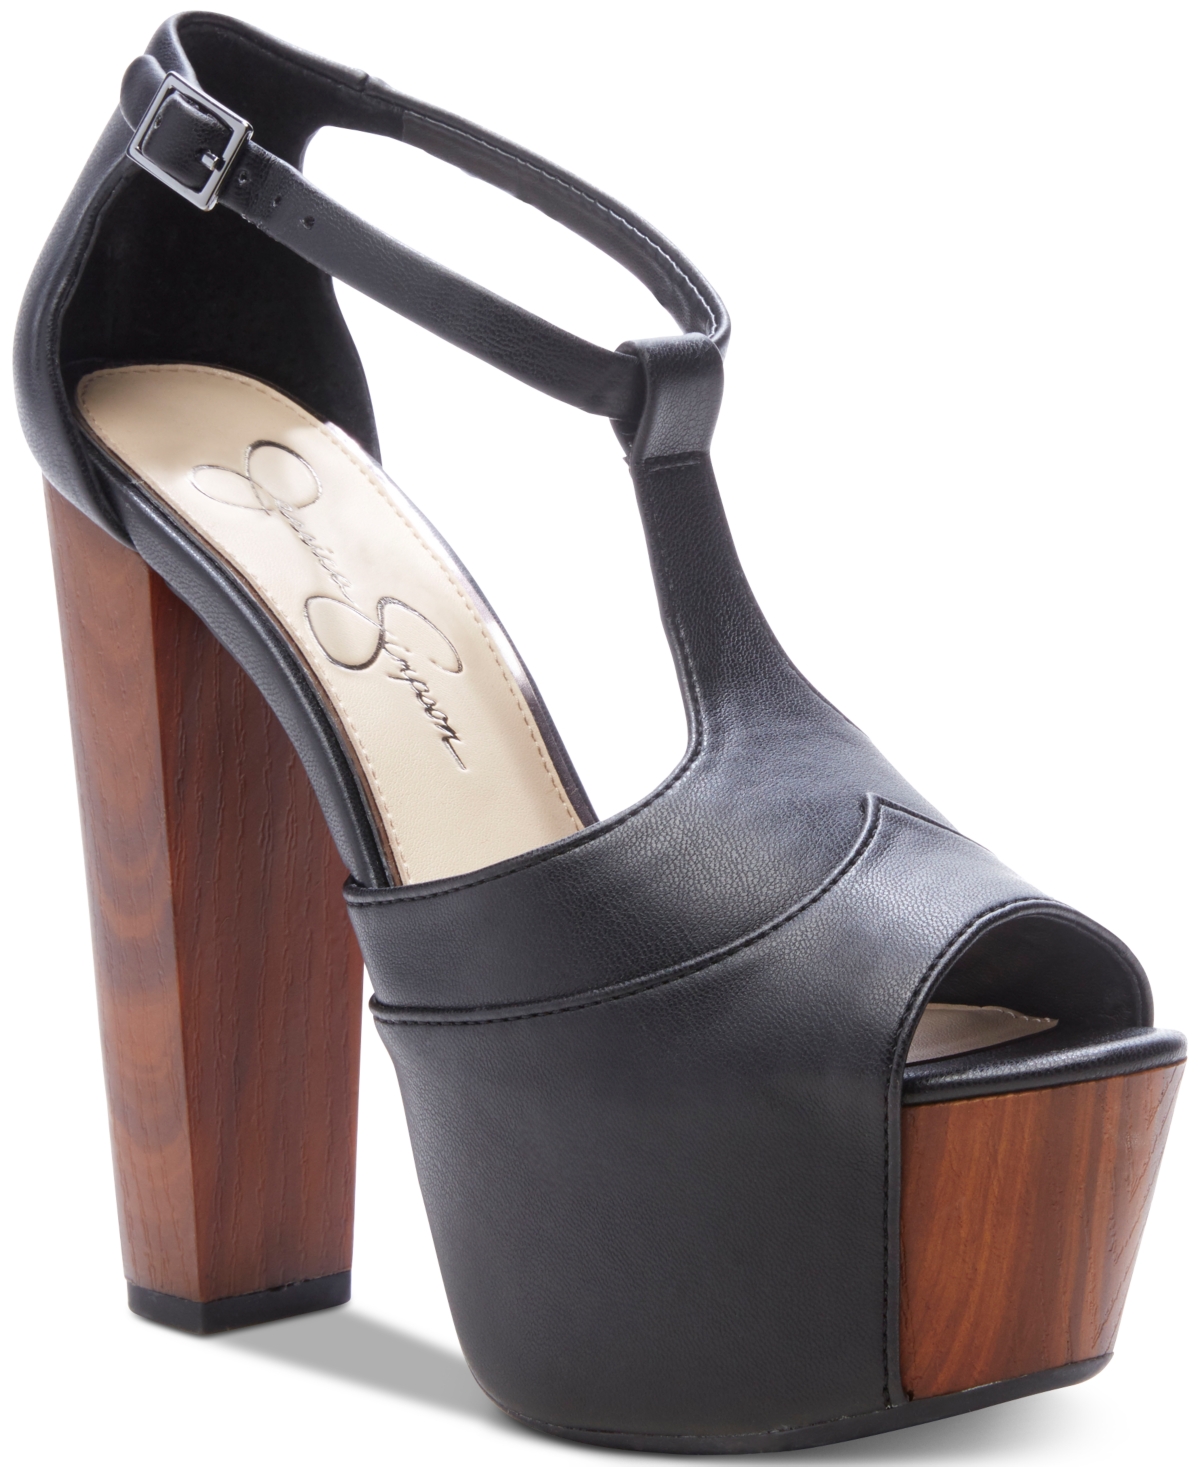 Jessica Simpson Dany Platform Sandals Women's Shoes